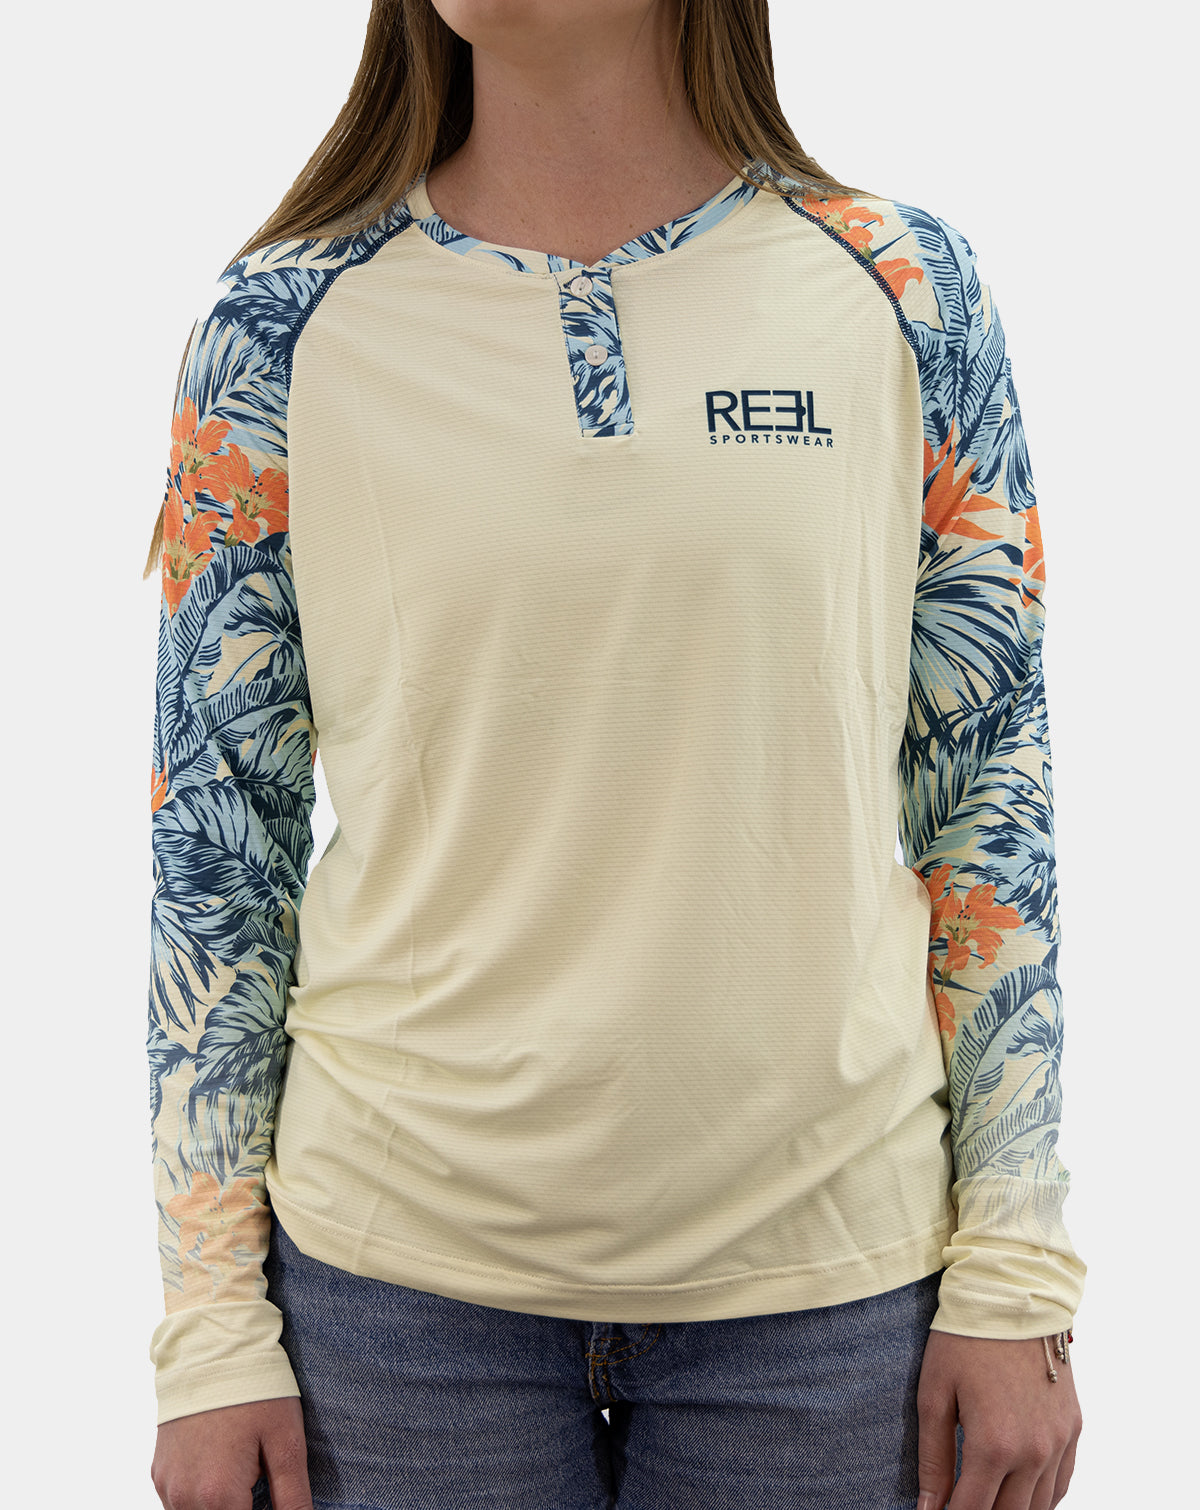 Women's Fishing Clothing Tagged erin - Reel Sportswear